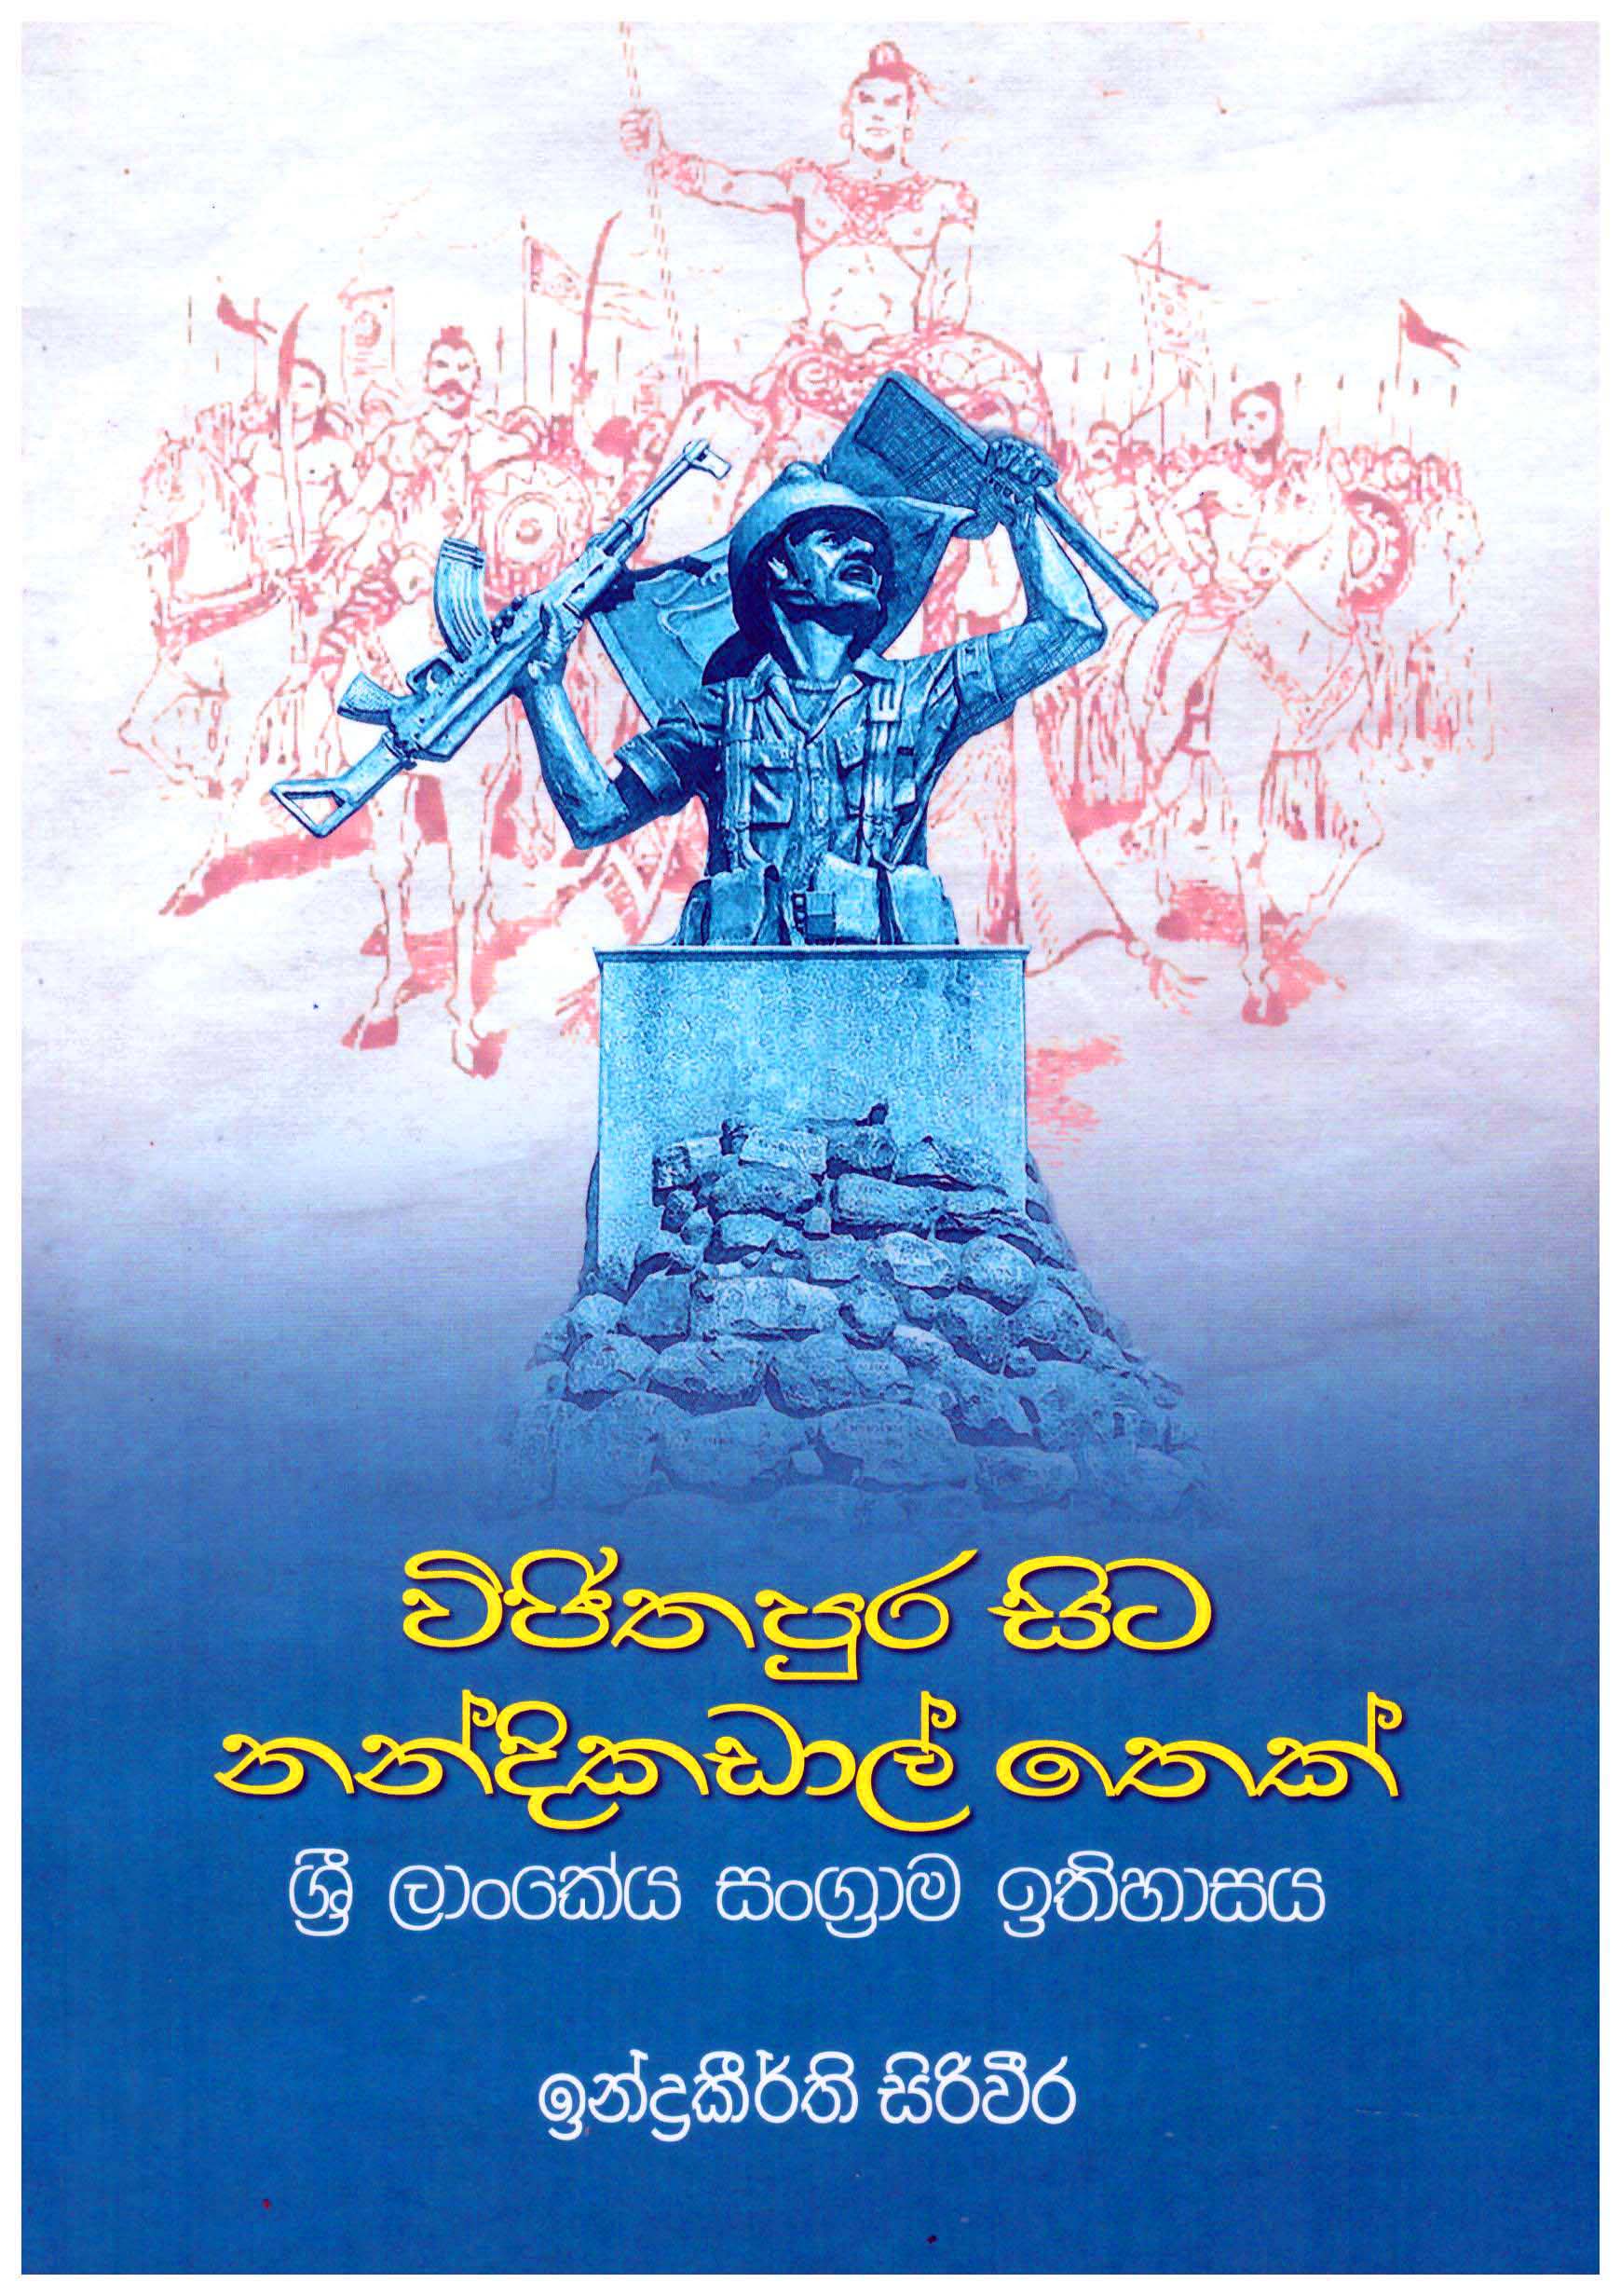 Vijithapura Sita Nandikadal Thek Sri lankeya Sangrama Ithihasaya